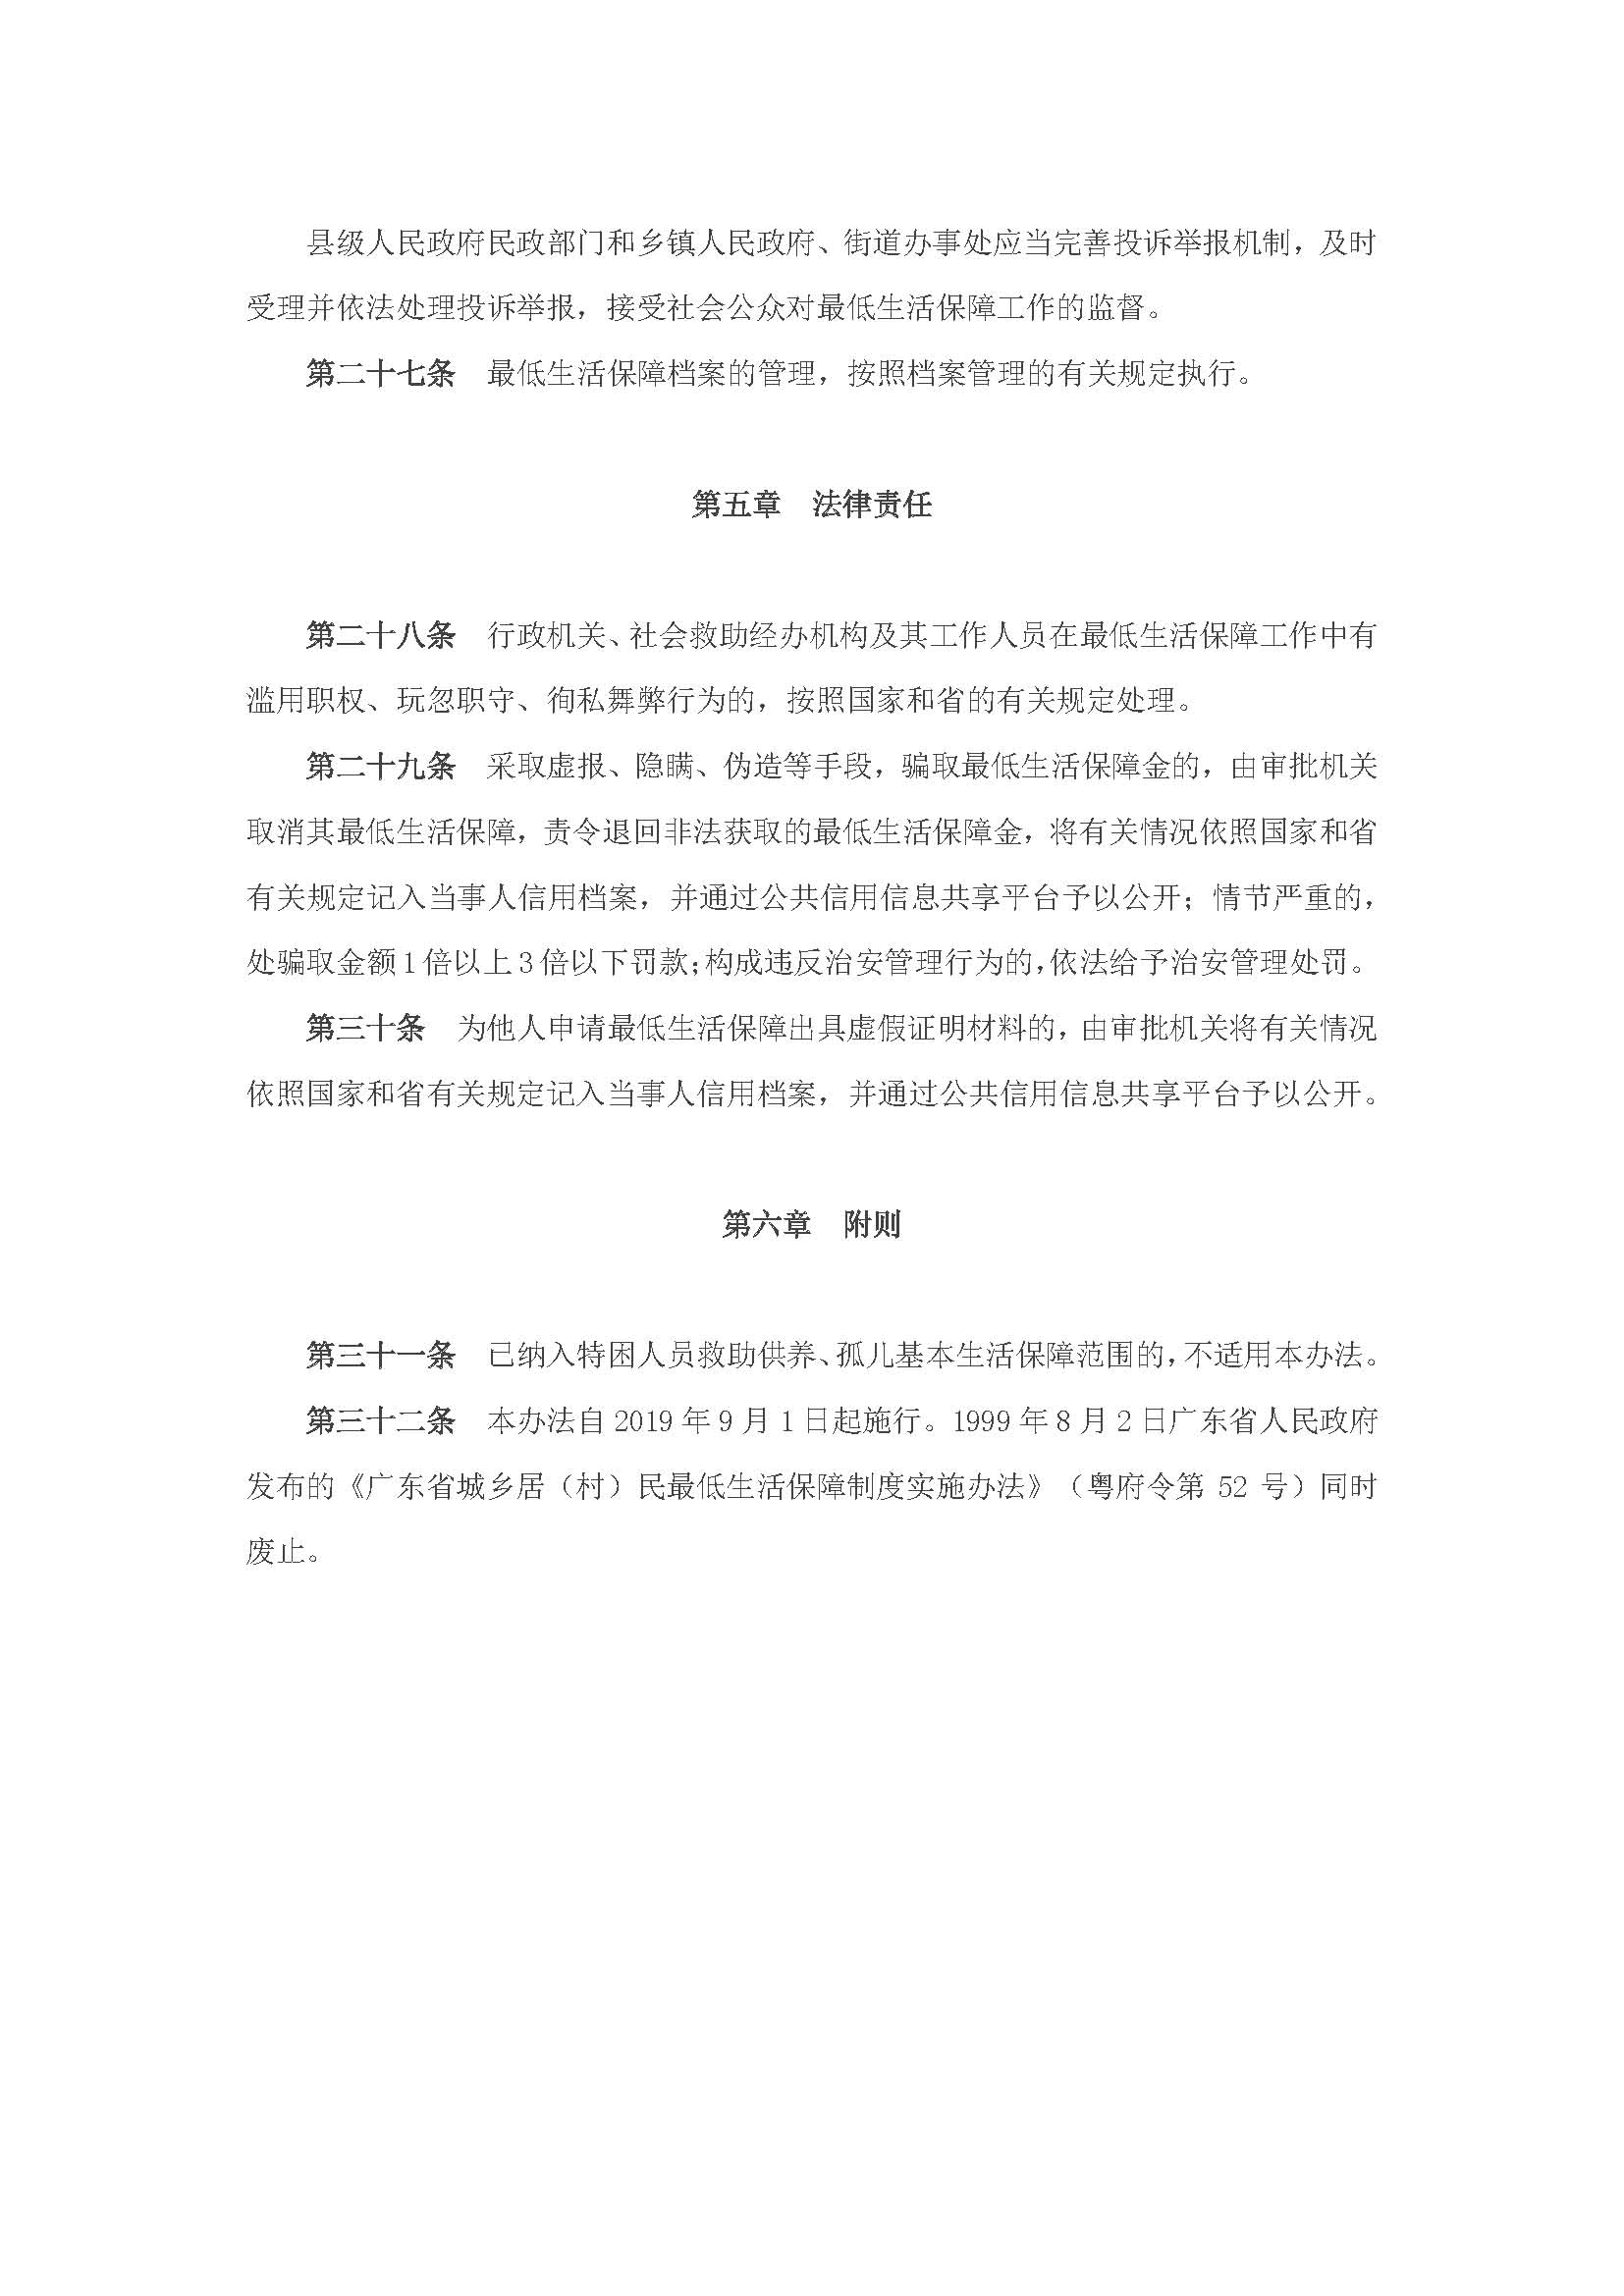 广东省最低生活保障制度实施办法_页面_8.jpg